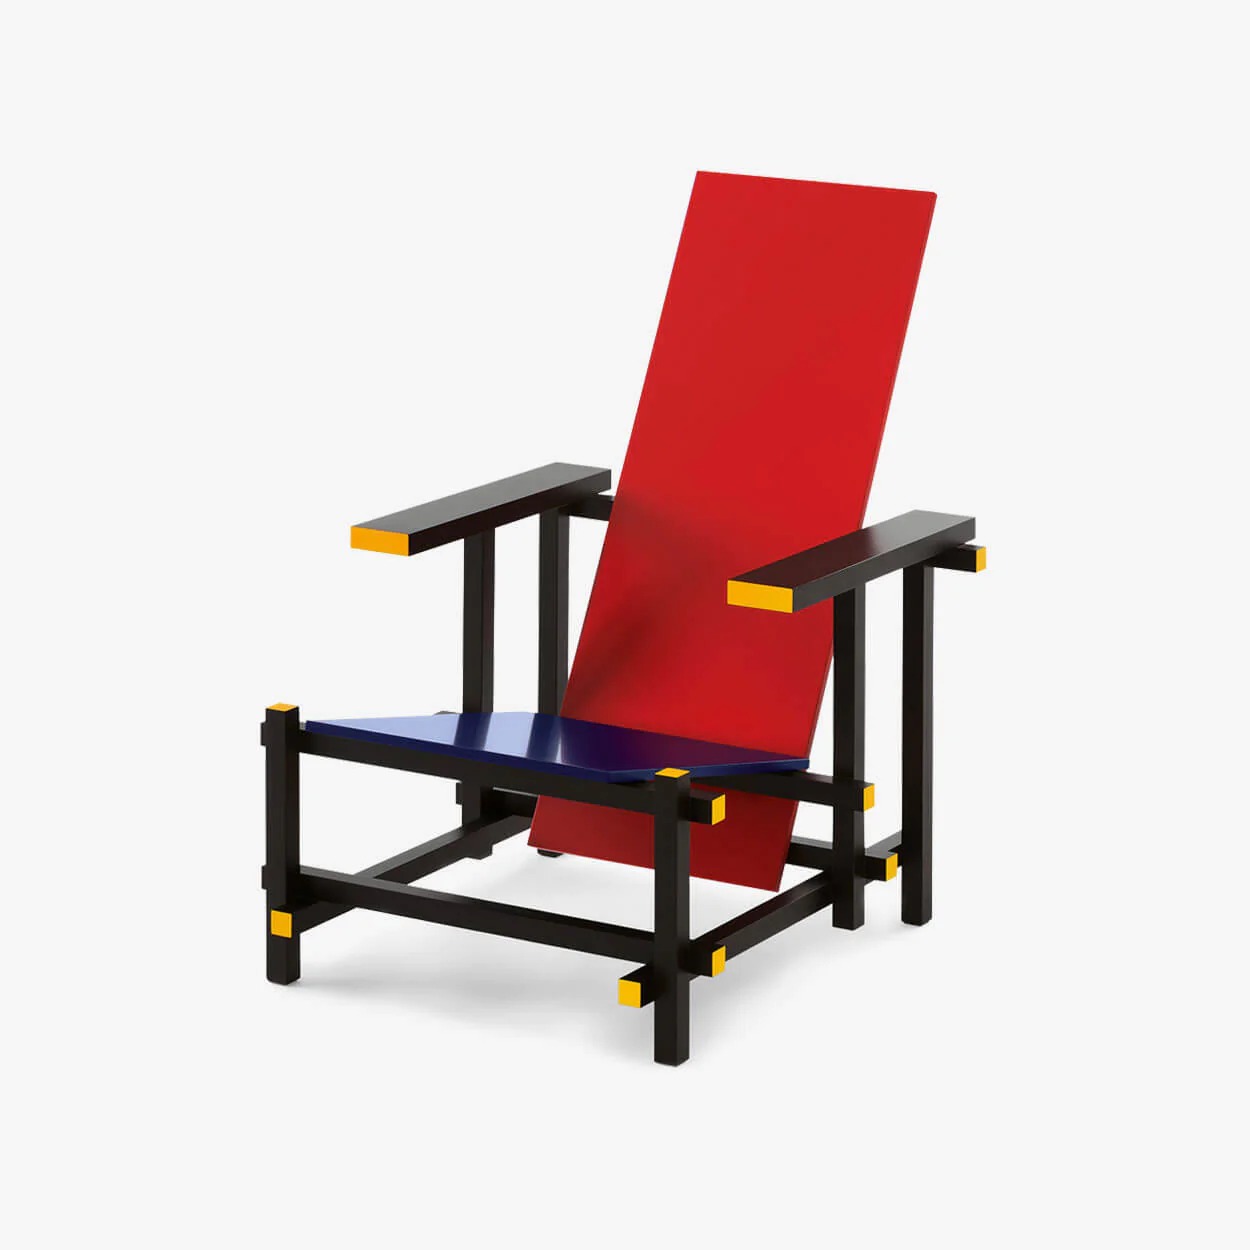 Kırmızı/Mavi Kol Sandalyesi (Red/Blue Armchair): Hollandalı tasarımcı Gerrit Rietveld